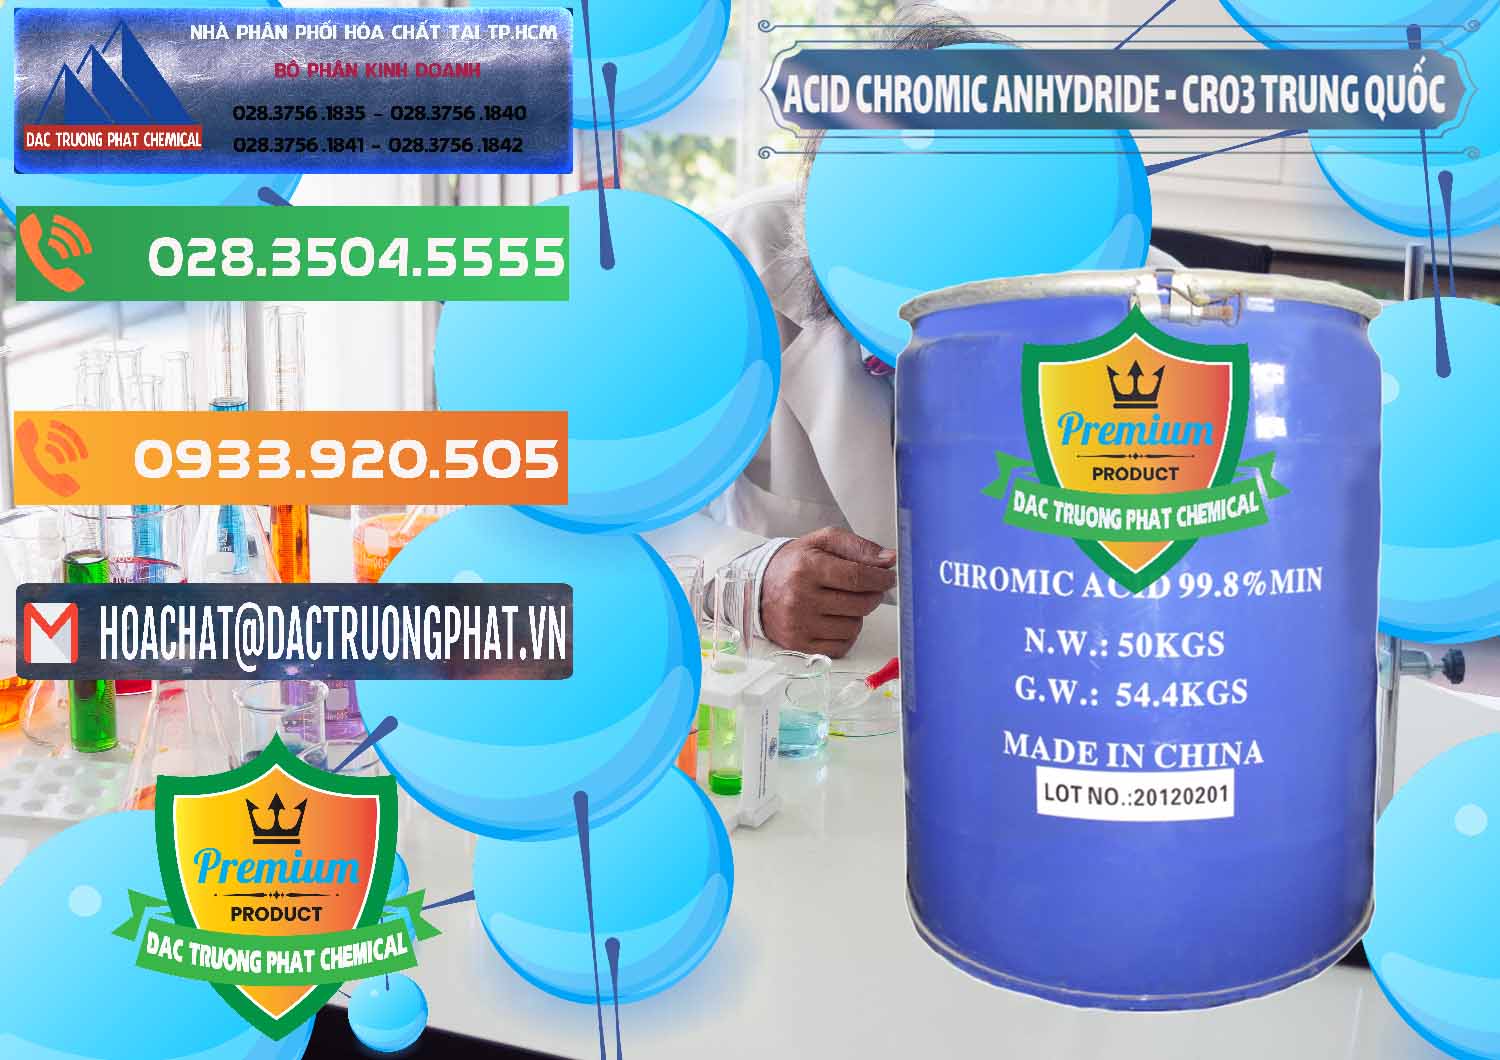 Cty chuyên nhập khẩu & bán Acid Chromic Anhydride - Cromic CRO3 Trung Quốc China - 0007 - Cty chuyên cung ứng và phân phối hóa chất tại TP.HCM - hoachatxulynuoc.com.vn